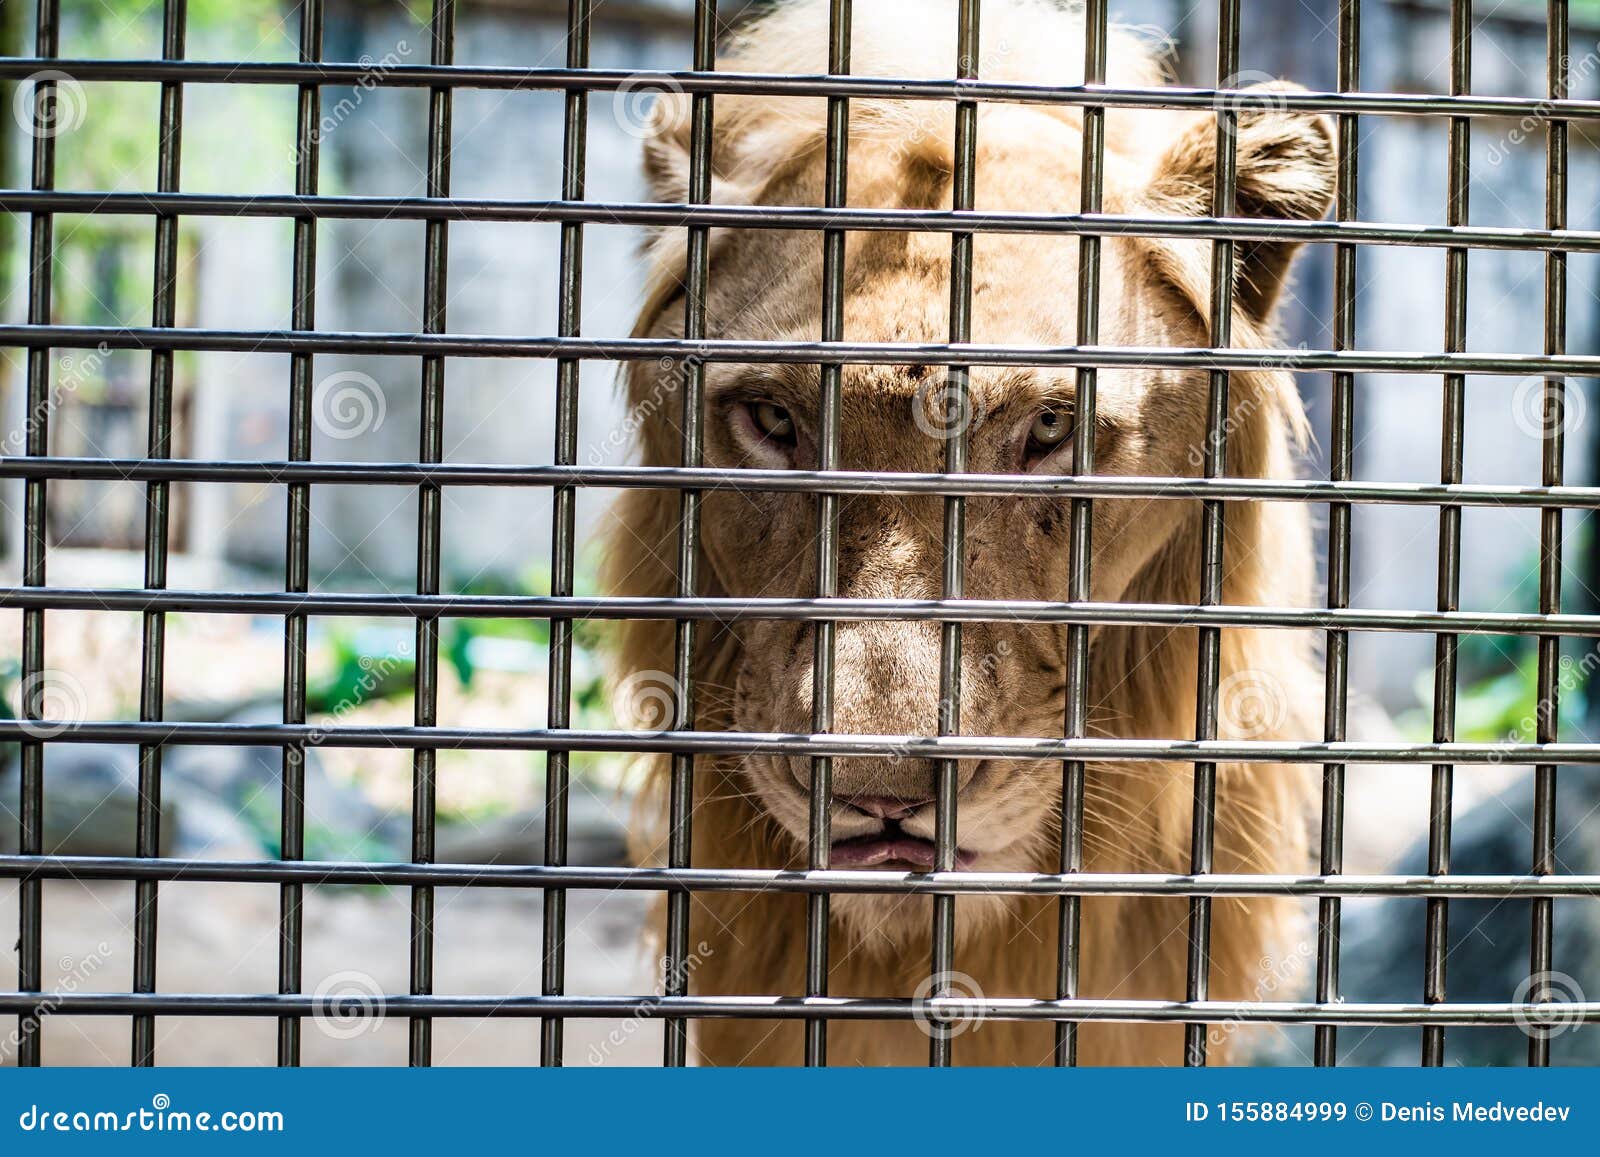 Das Traurige Gesicht Eines Lowen In Einem Kafig Das Konzept Der Inhaftierung Tierspottung Stockbild Bild Von Tierspottung Konzept